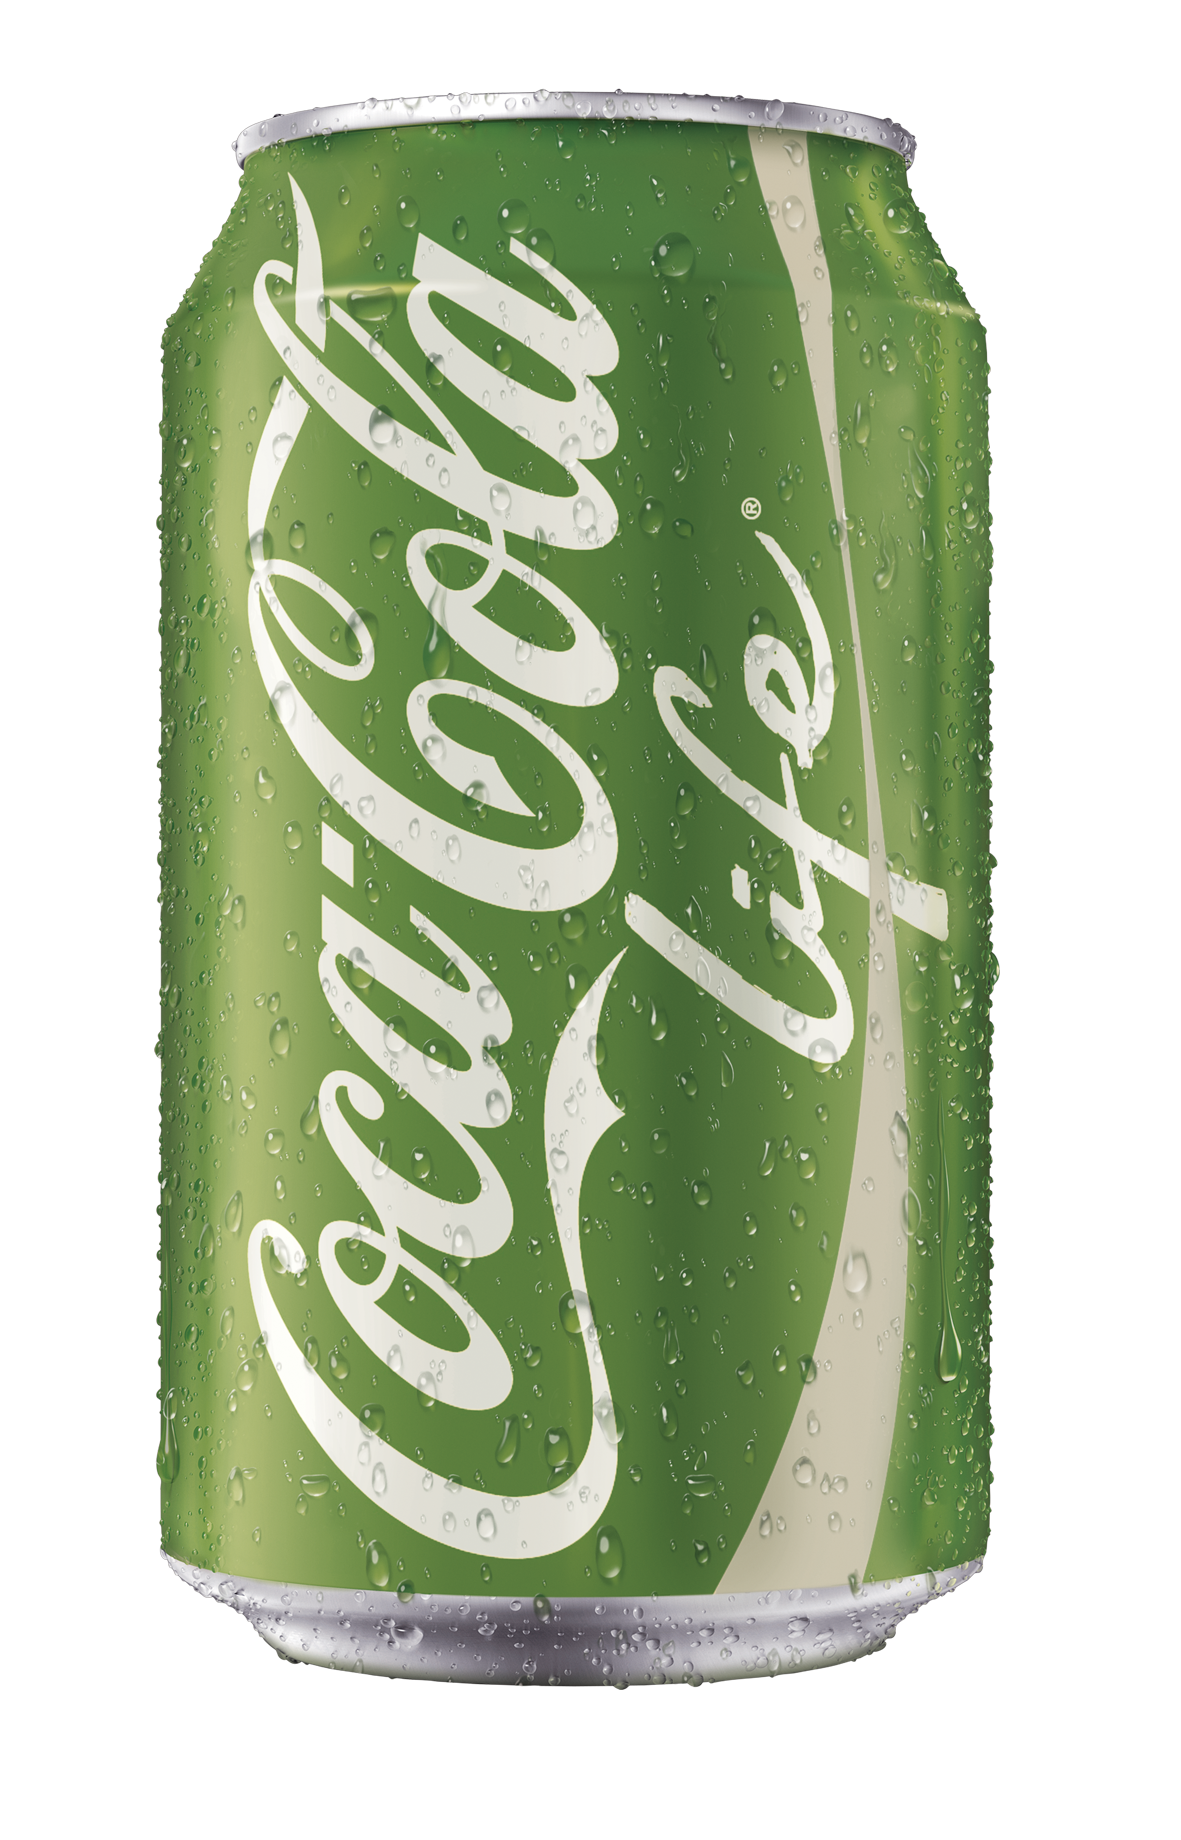 Coca-Cola-life-lata.png